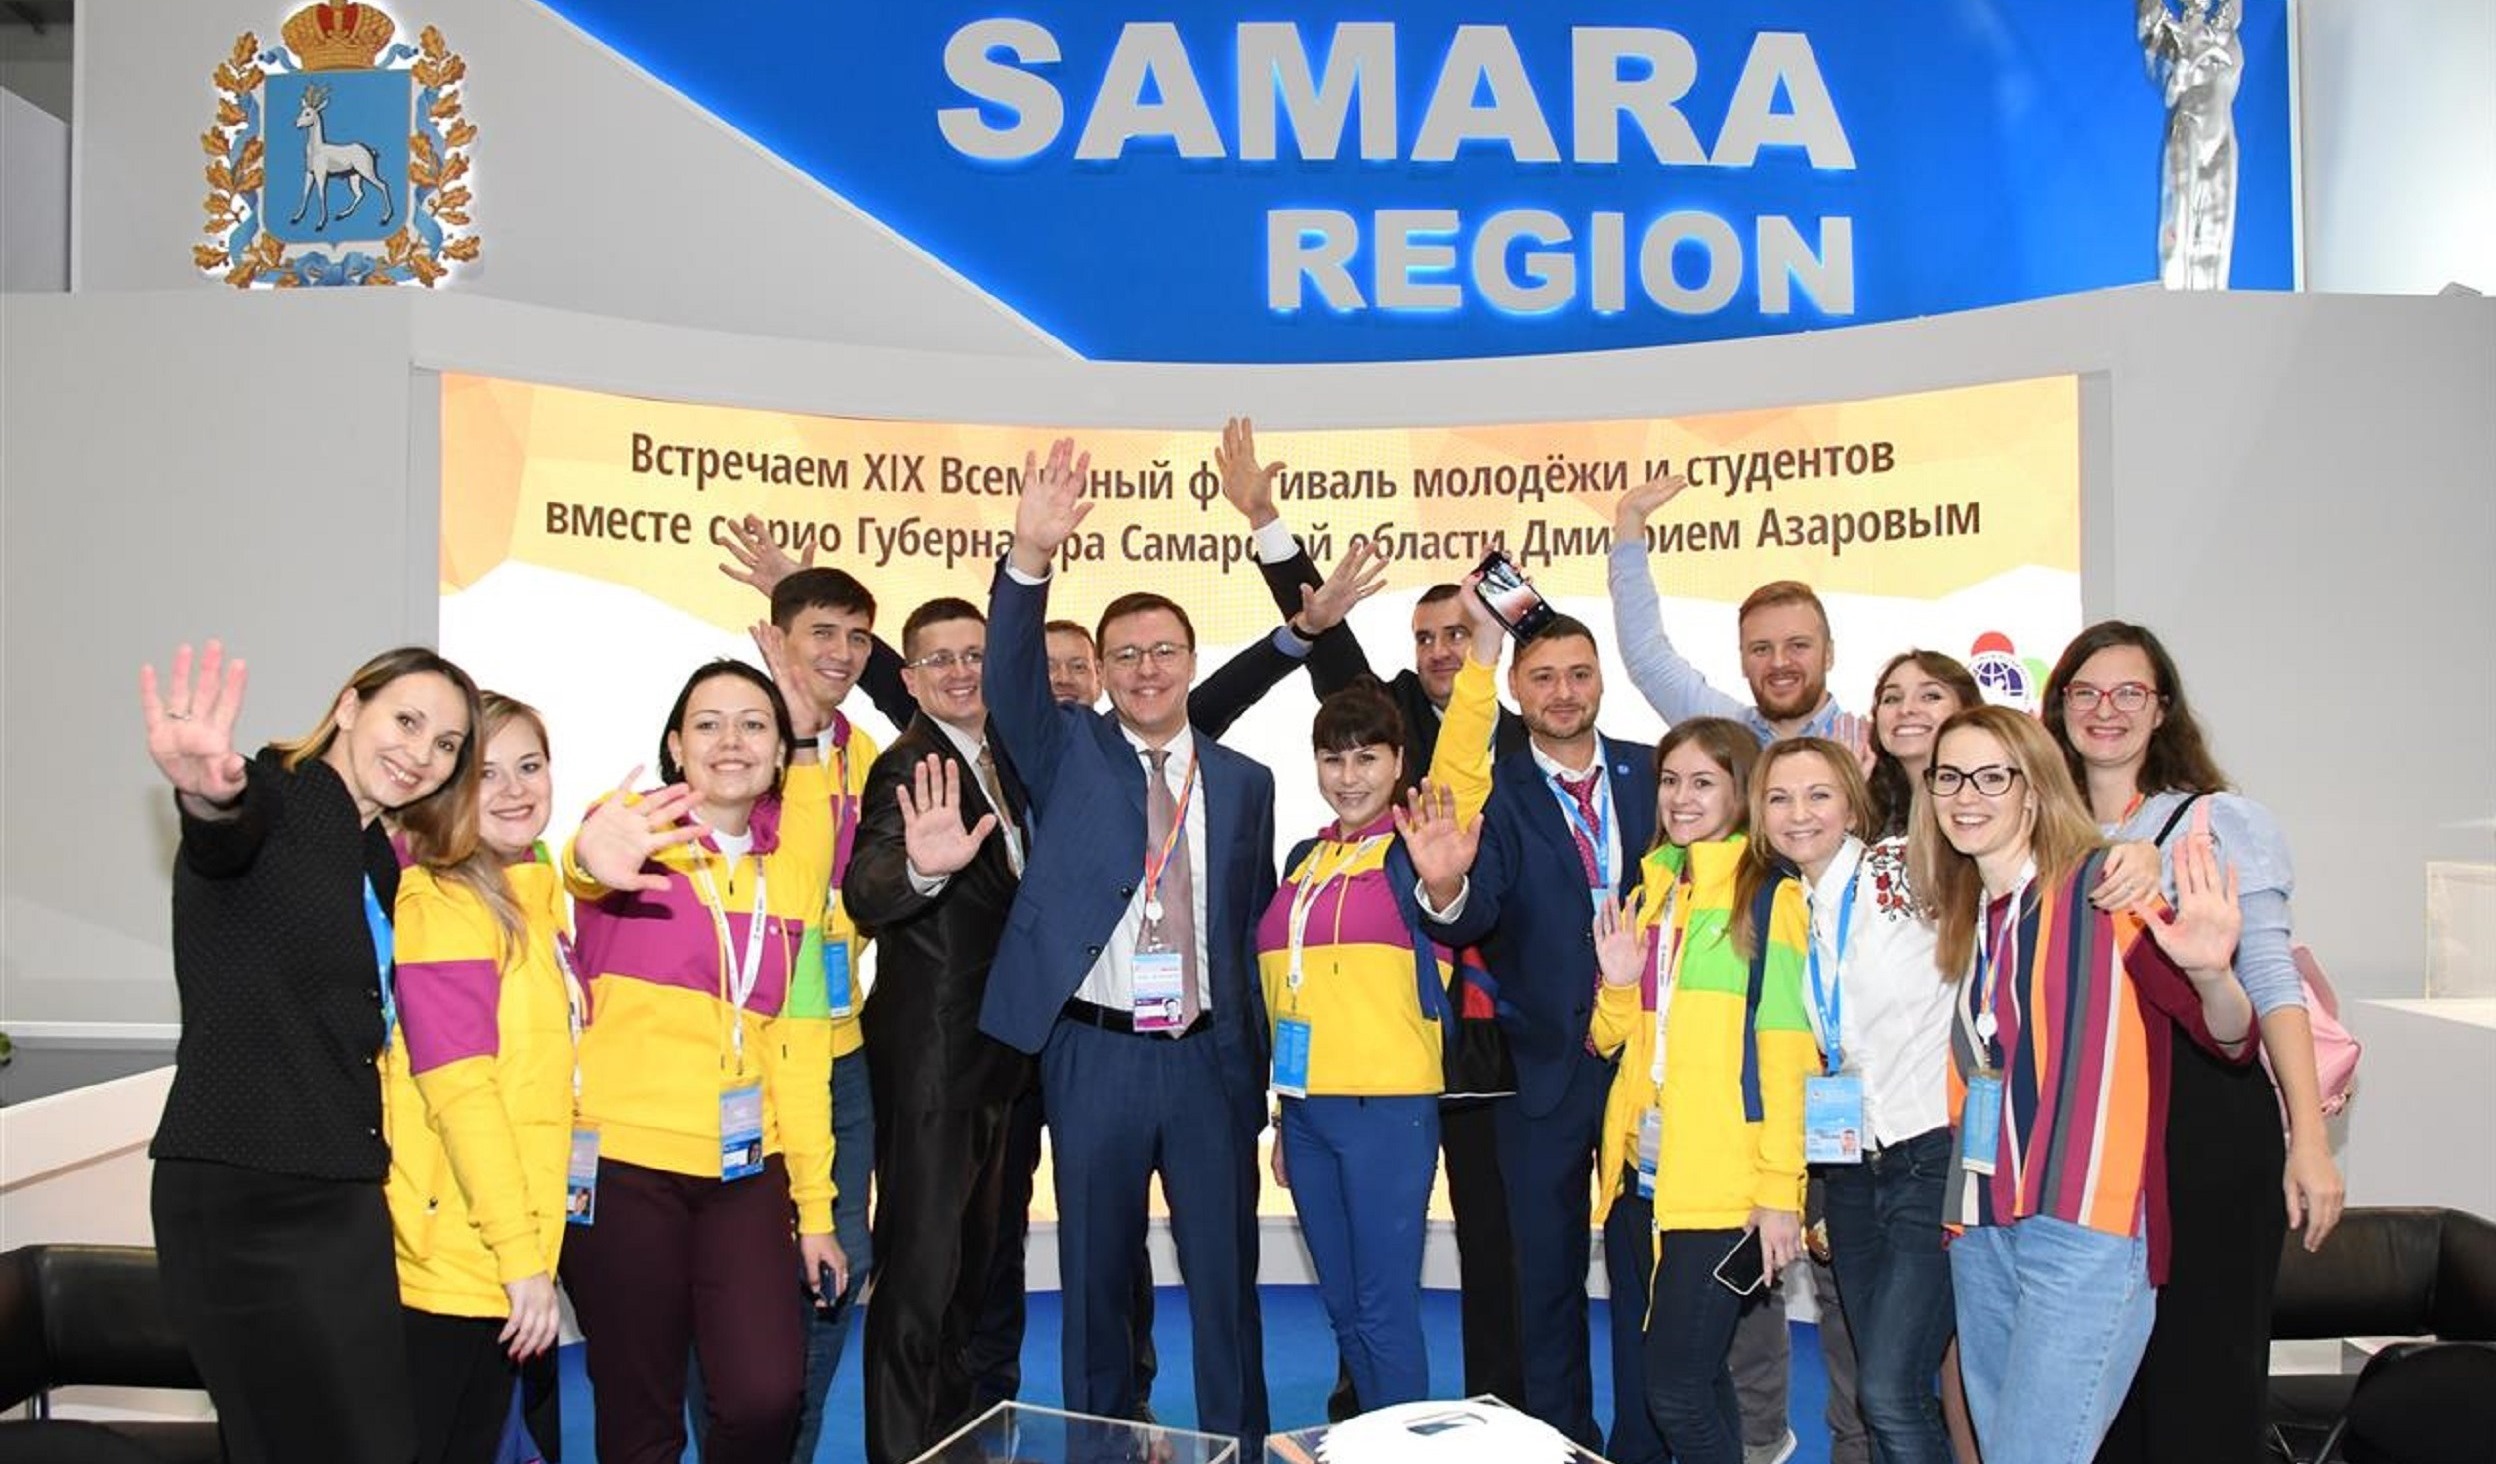 Самарская область достойно представлена  на XIX Всемирном фестивале молодежи и студентов